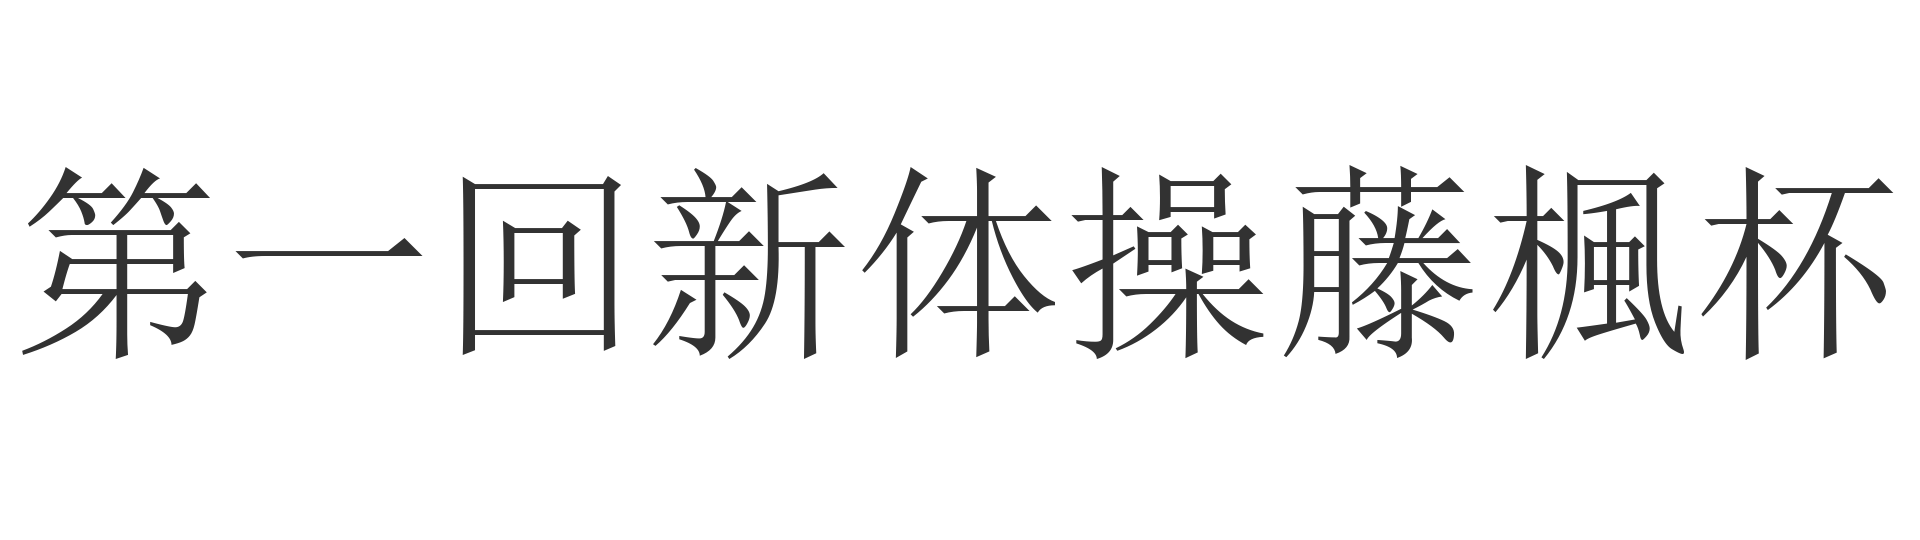 第一回新体操藤楓杯 logo